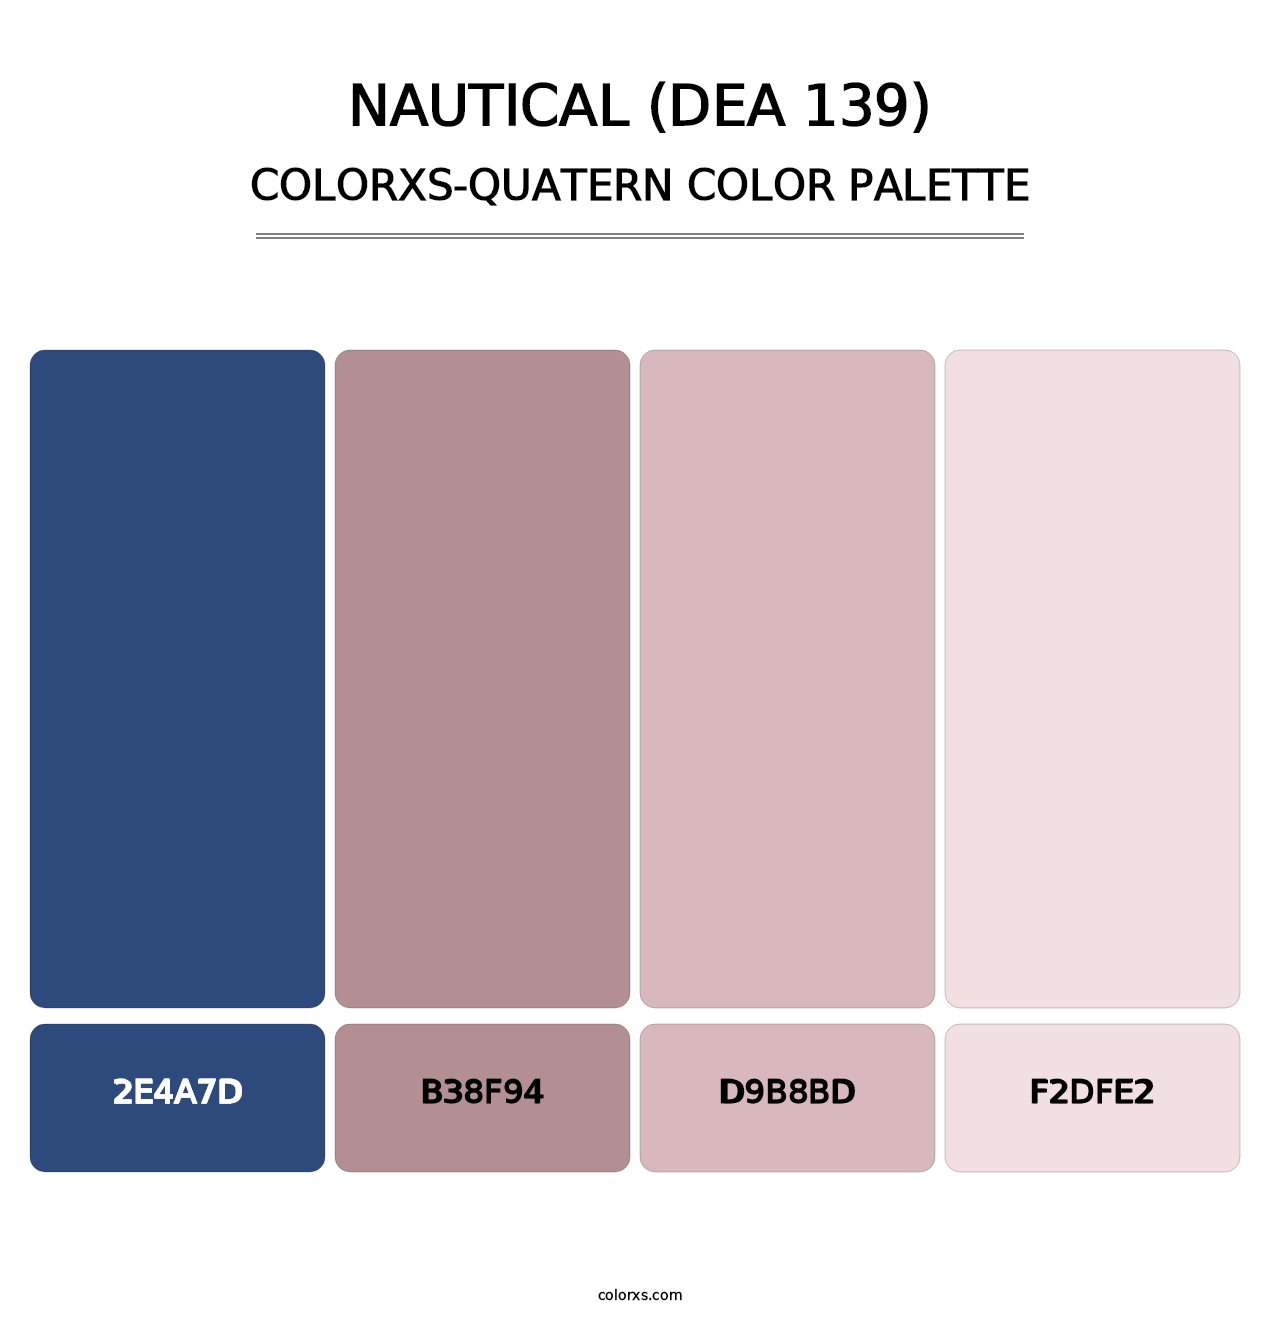 Nautical (DEA 139) - Colorxs Quatern Palette